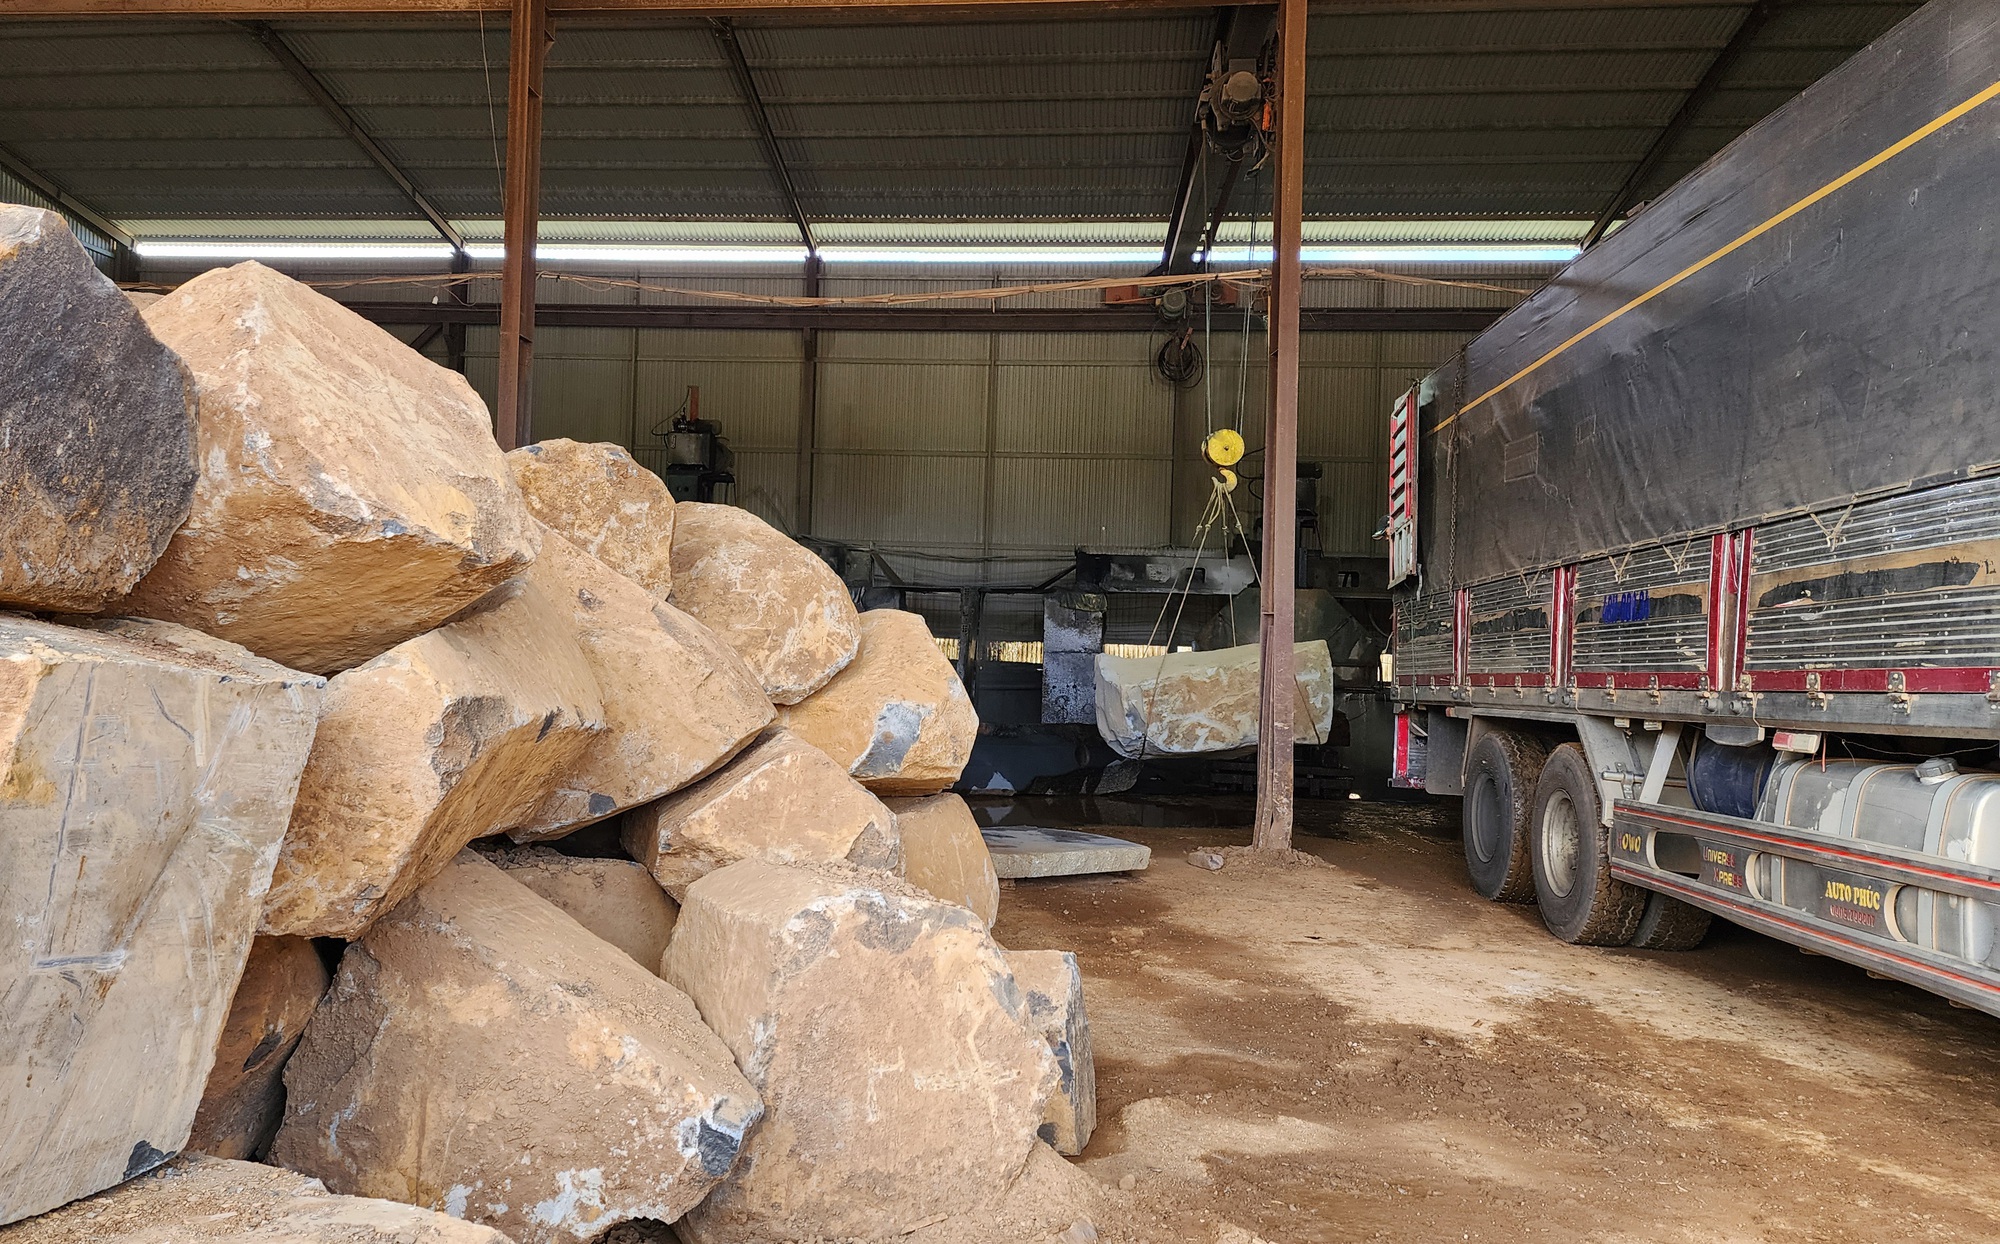 Doanh nghiệp khai thác đá cây trái phép ở Đắk Nông từng bị xử lý vẫn tái phạm - Ảnh 2.